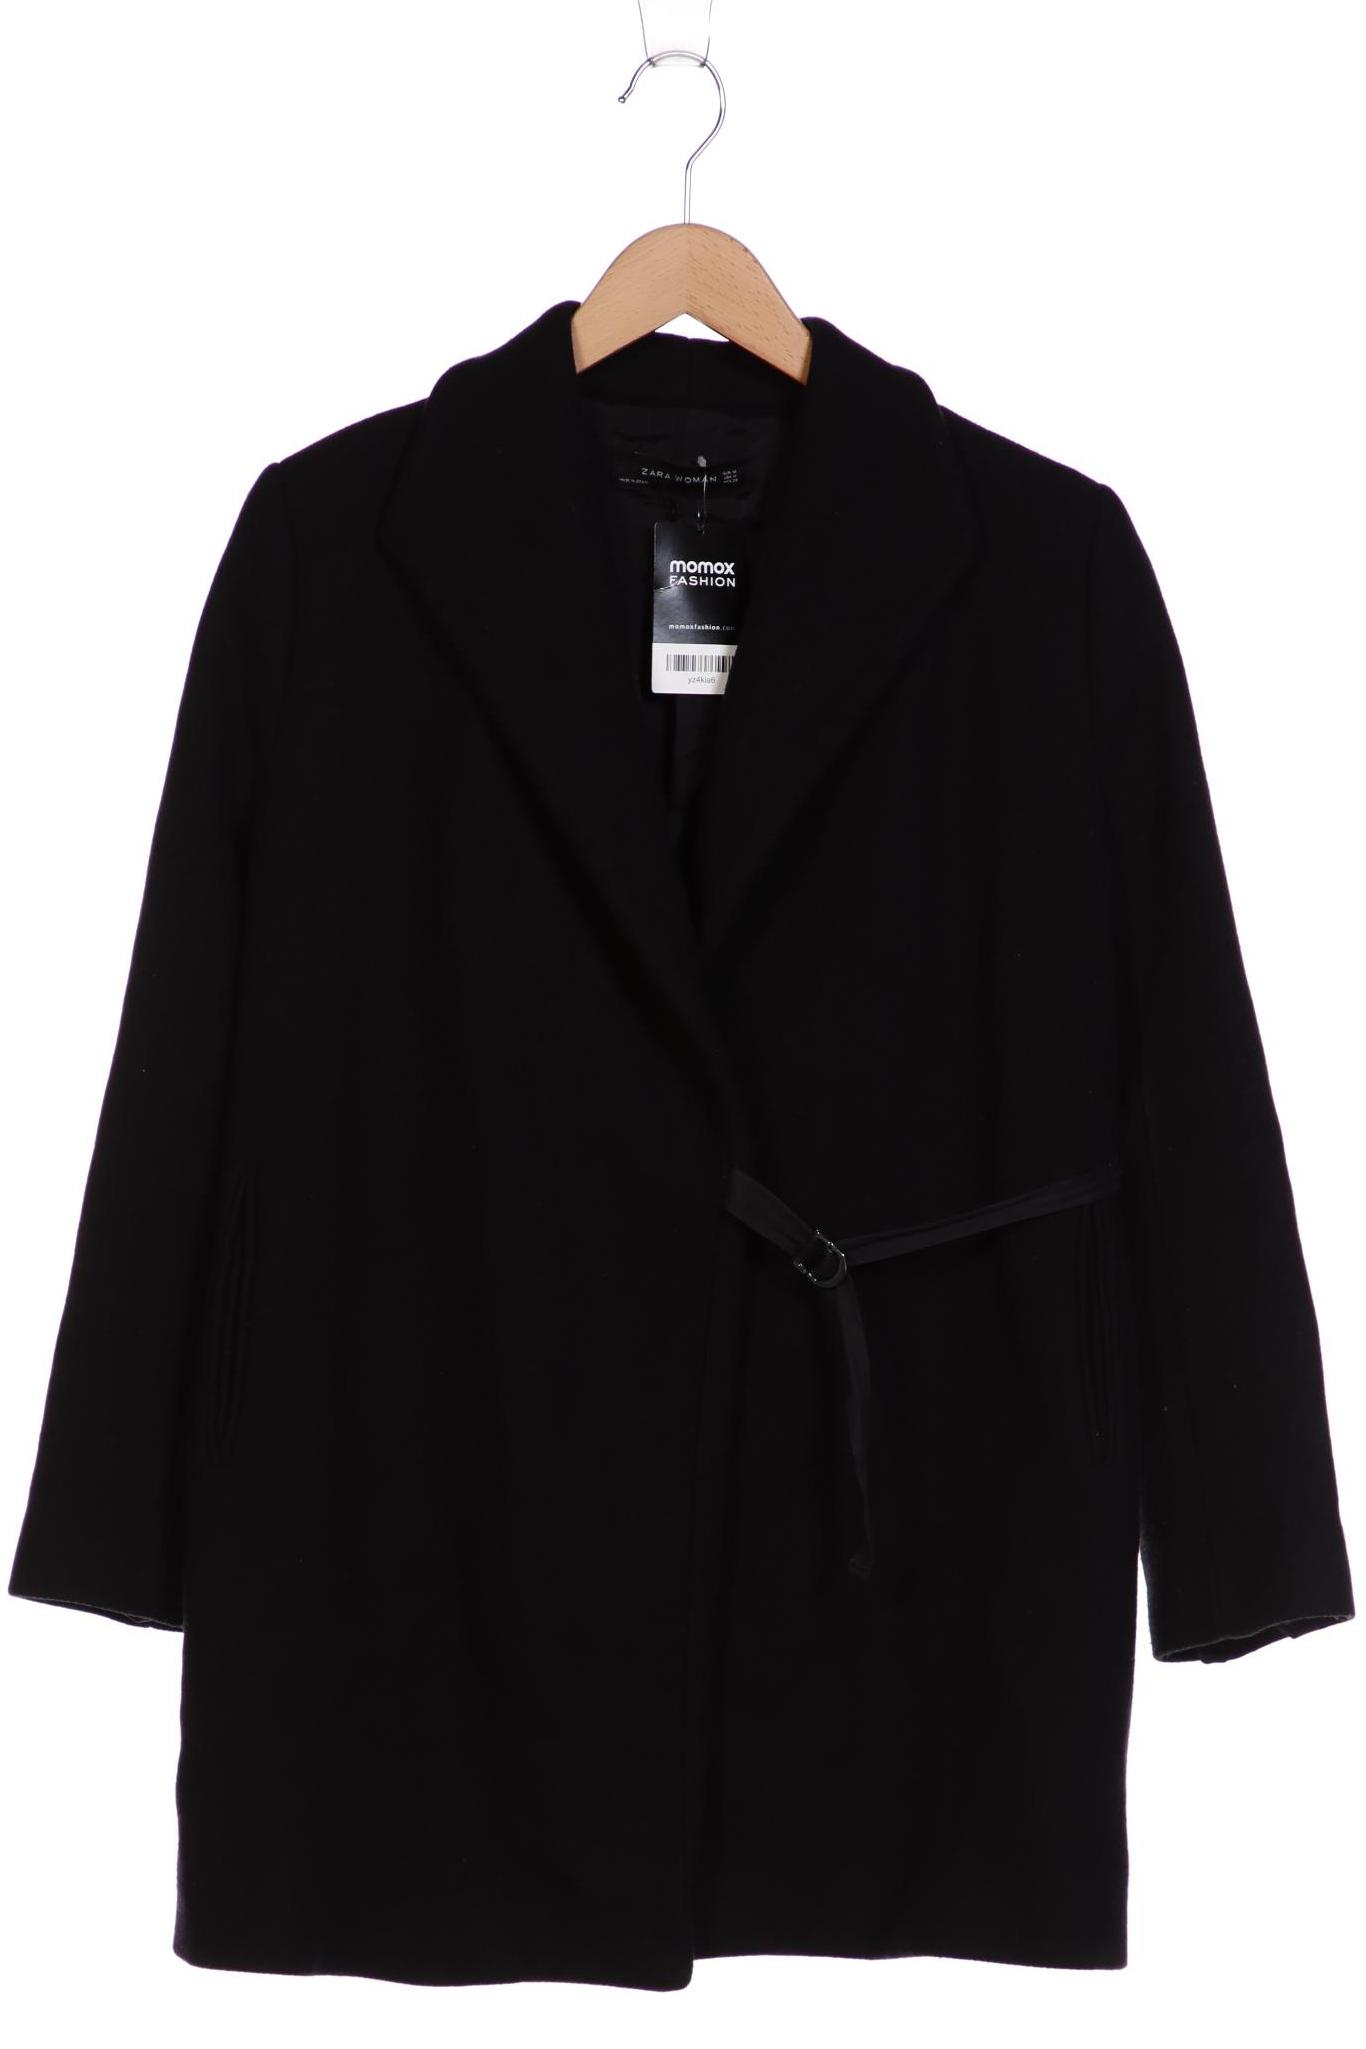 Zara Damen Mantel, schwarz, Gr. 38 von ZARA